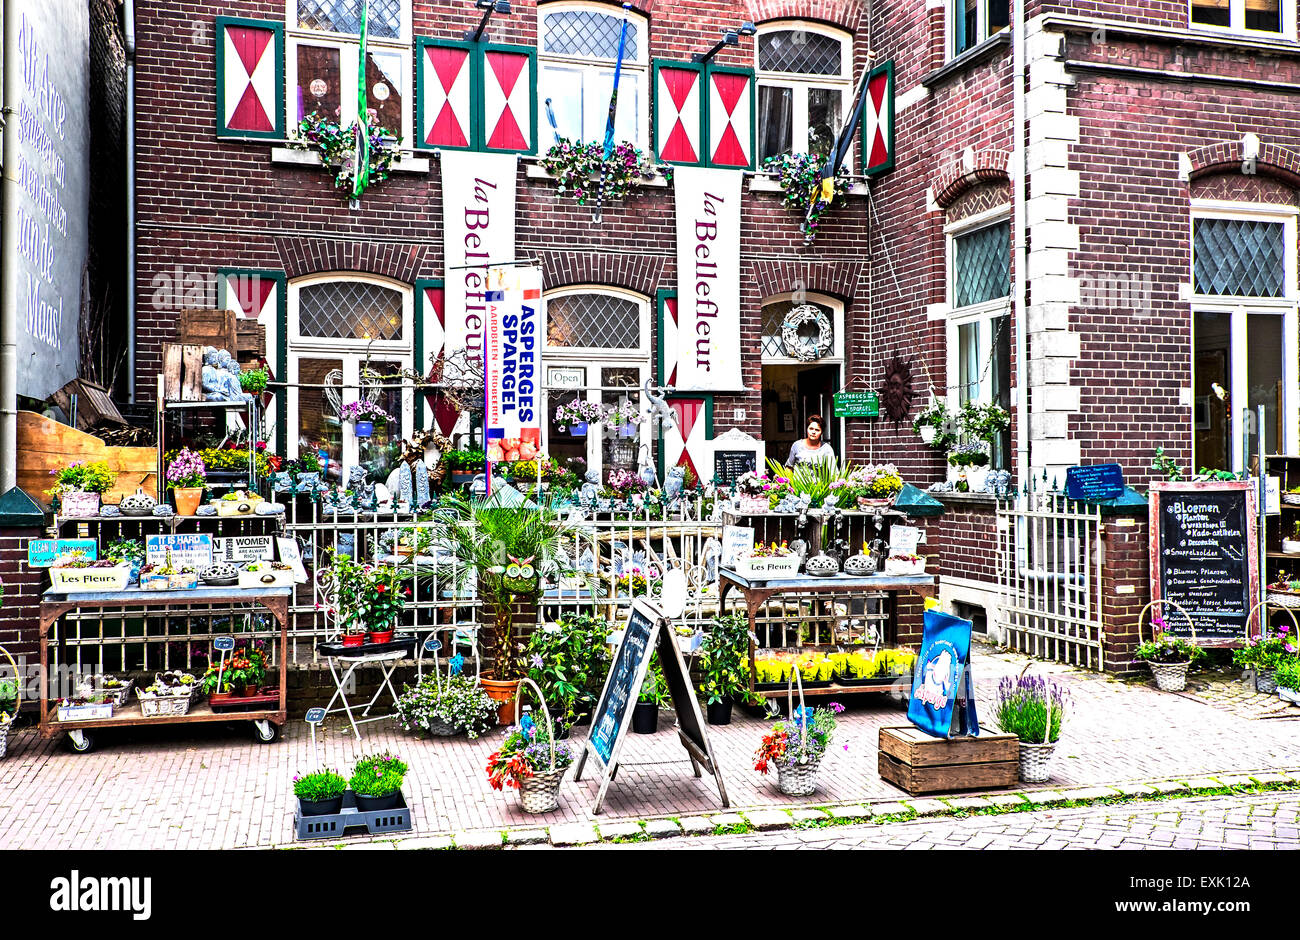 Fiore e negozio di articoli da regalo in Arcen, Paesi Bassi; Blumen- und Geschenkladen in Arcen, Niederlande Foto Stock